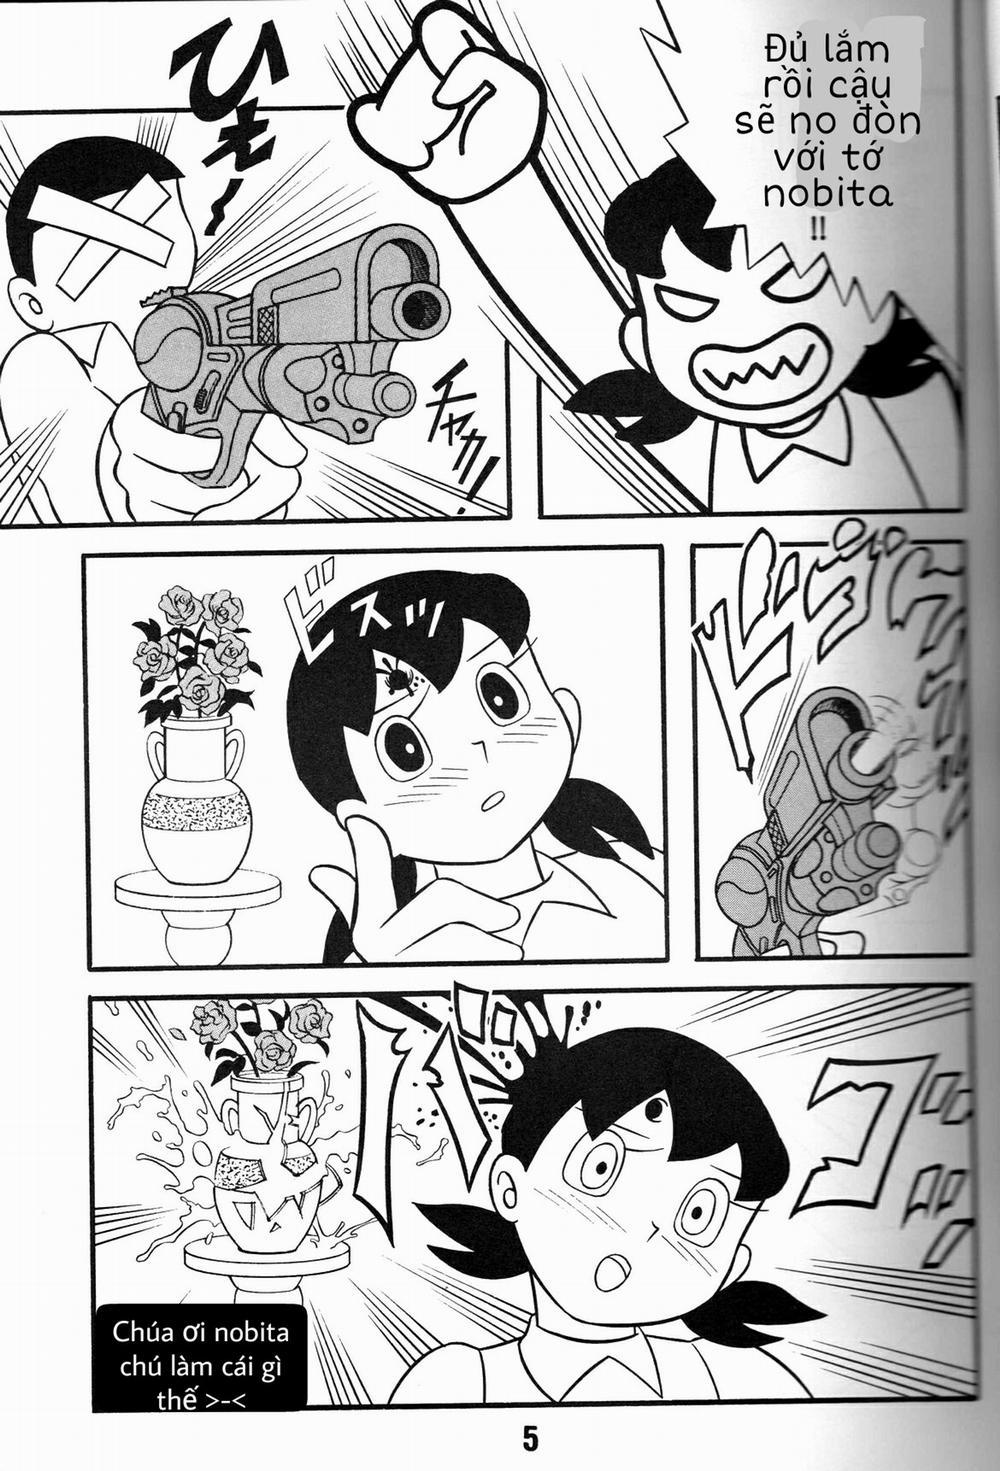 Tuyển Tập Doraemon Doujinshi 18+ Chương 1 M u c a t t c Trang 4